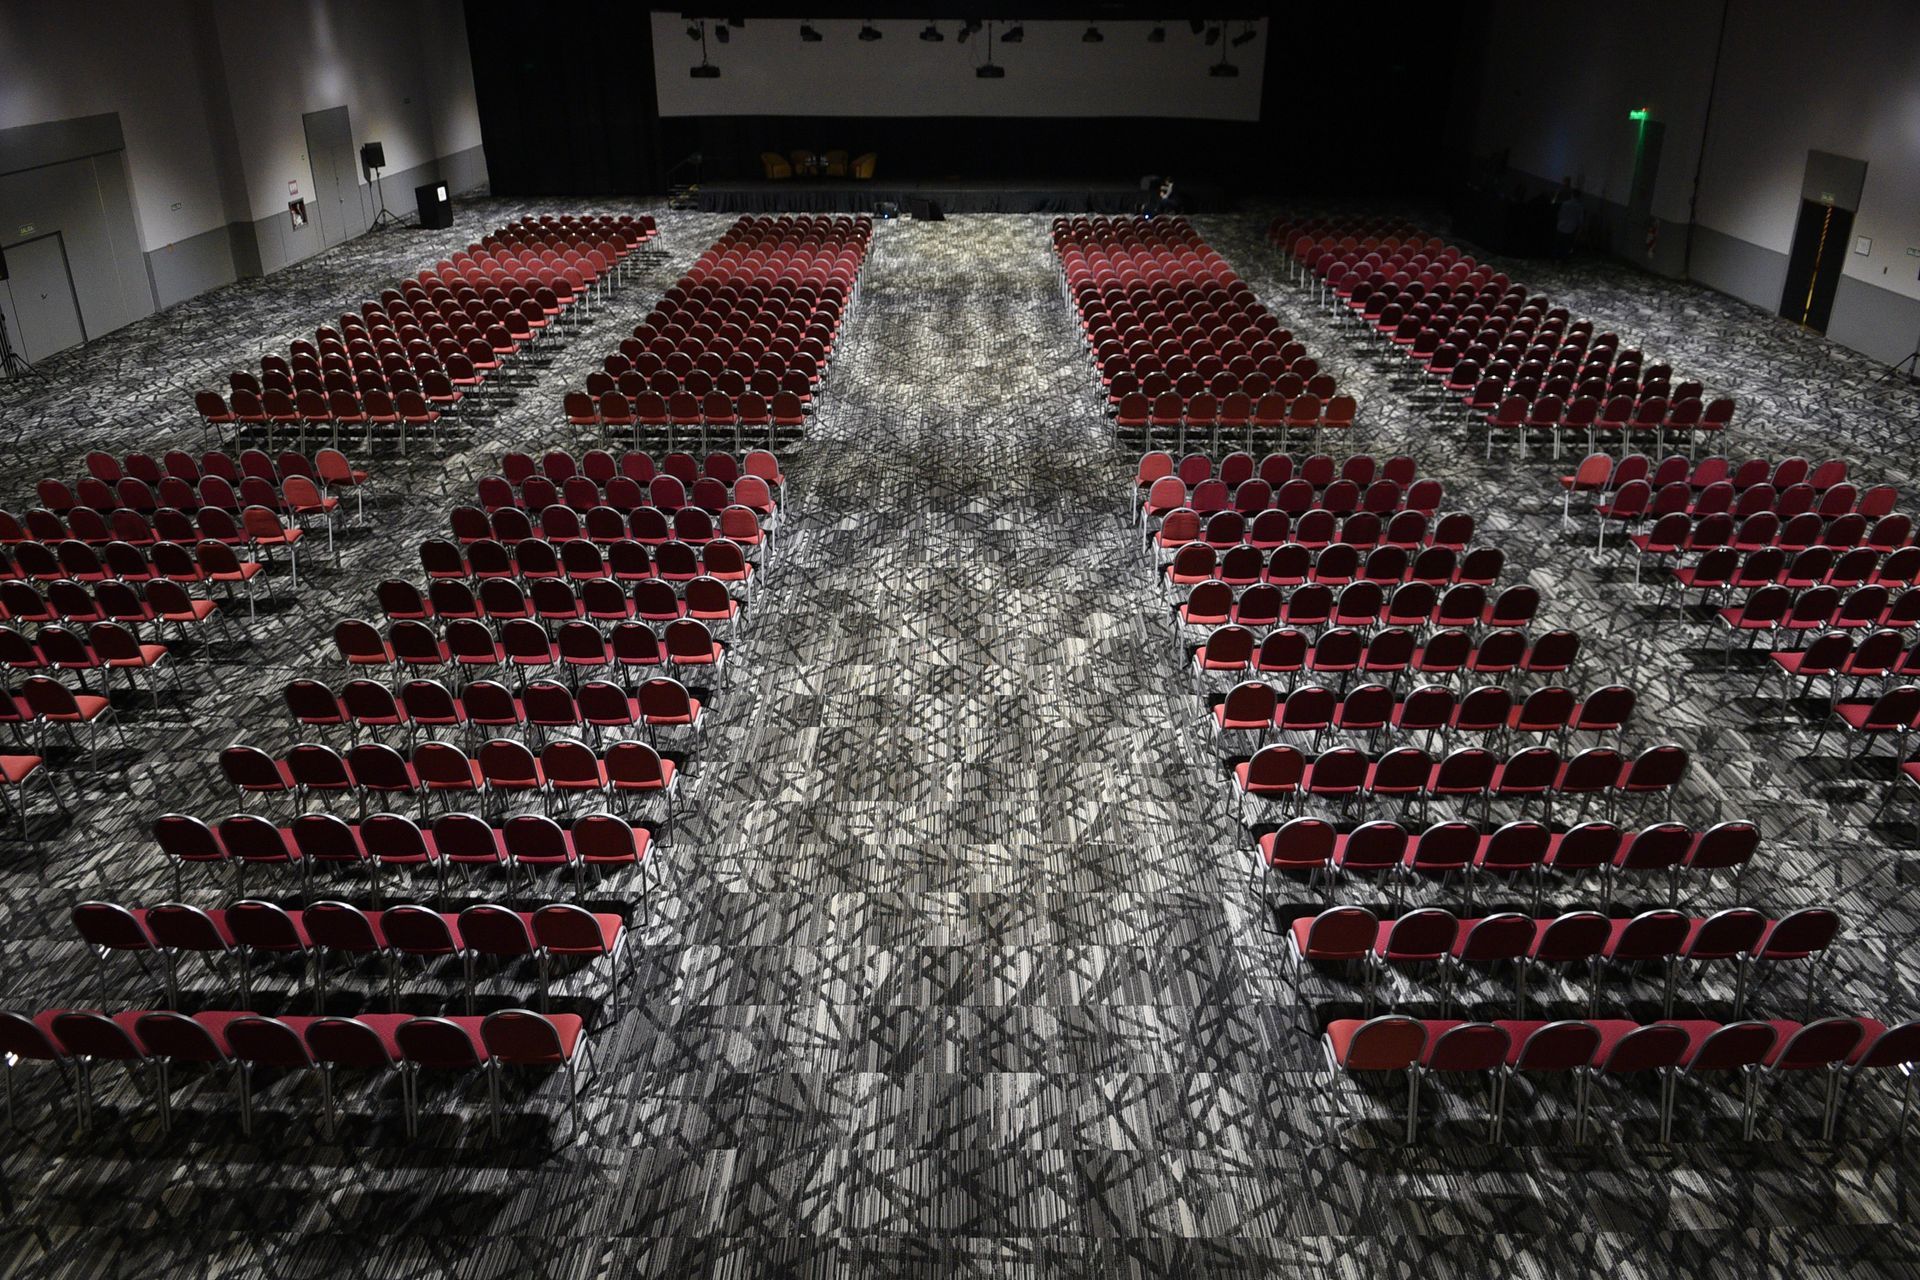 Filas de sillas rojas están alineadas en un gran auditorio.